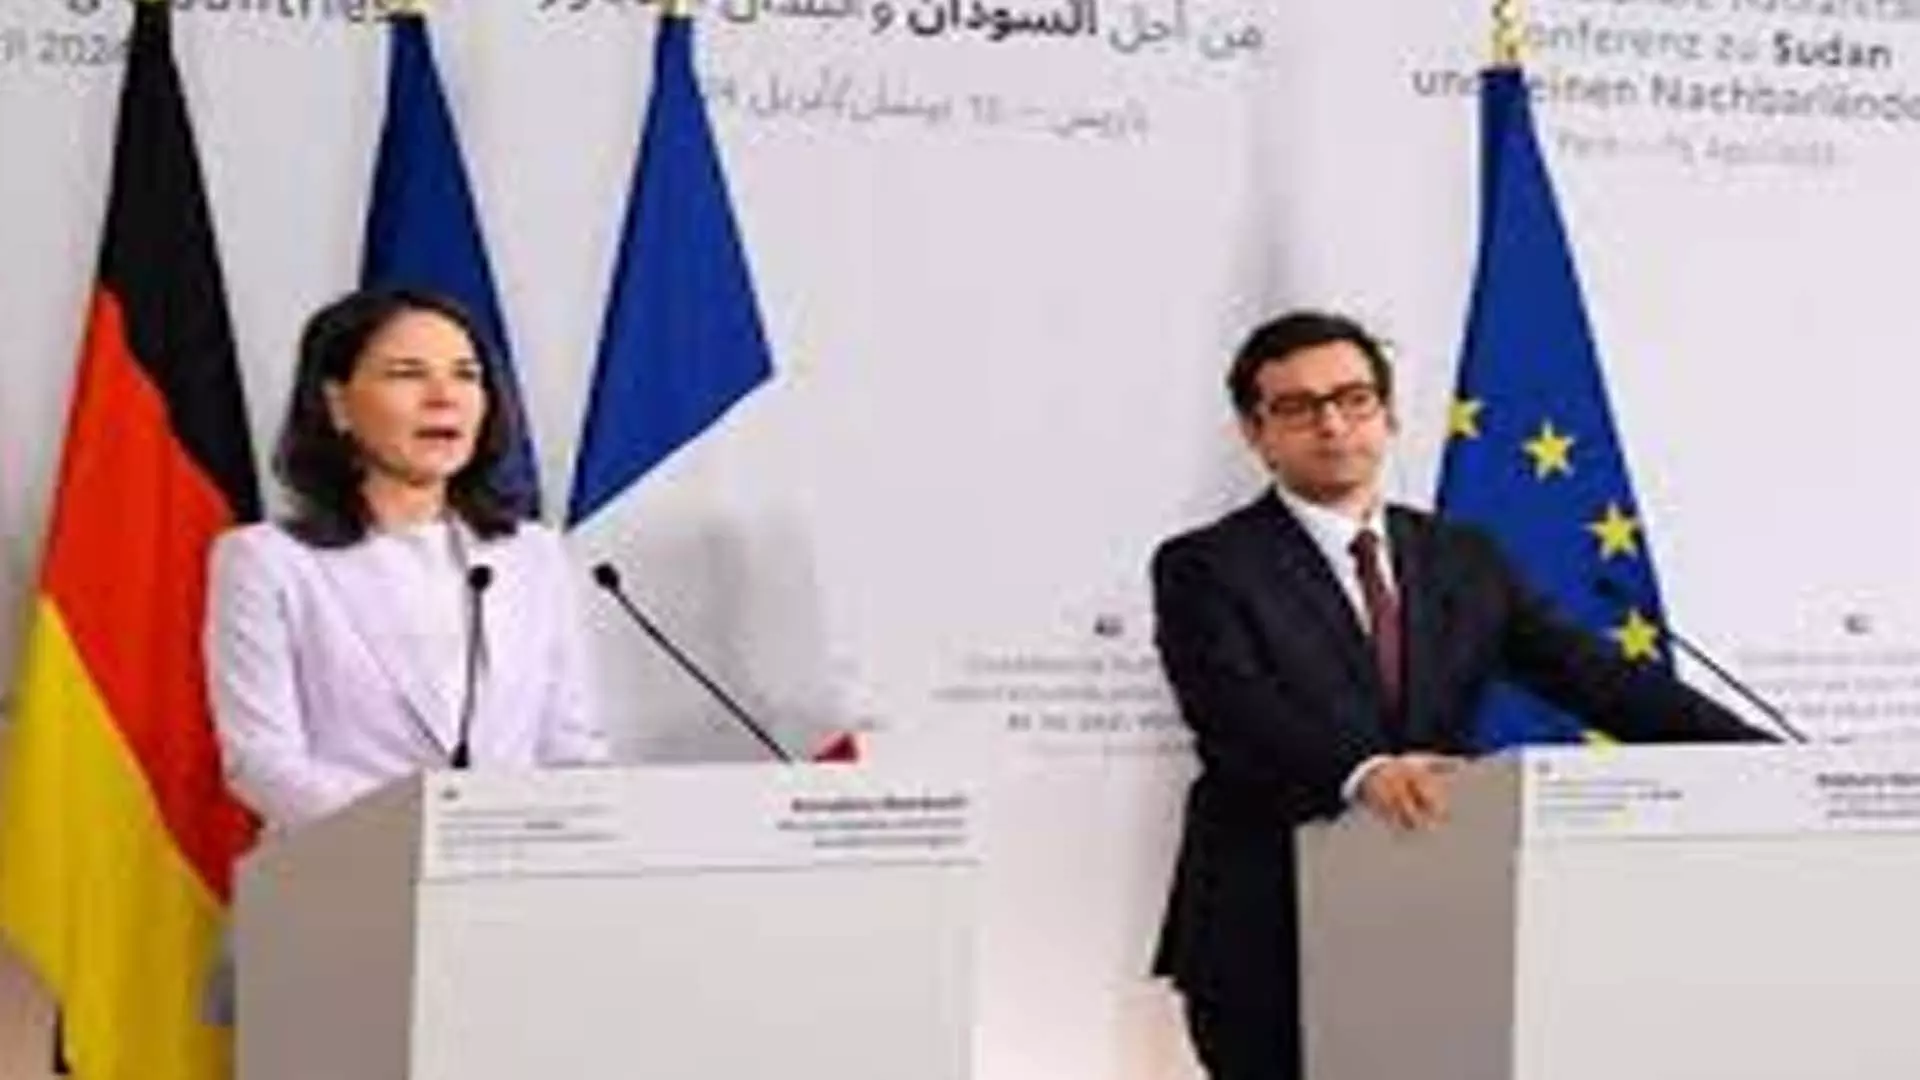 गृहयुद्ध बर्लिन, पेरिस ने सूडानी लोगों के लिए समर्थन का आह्वान किया